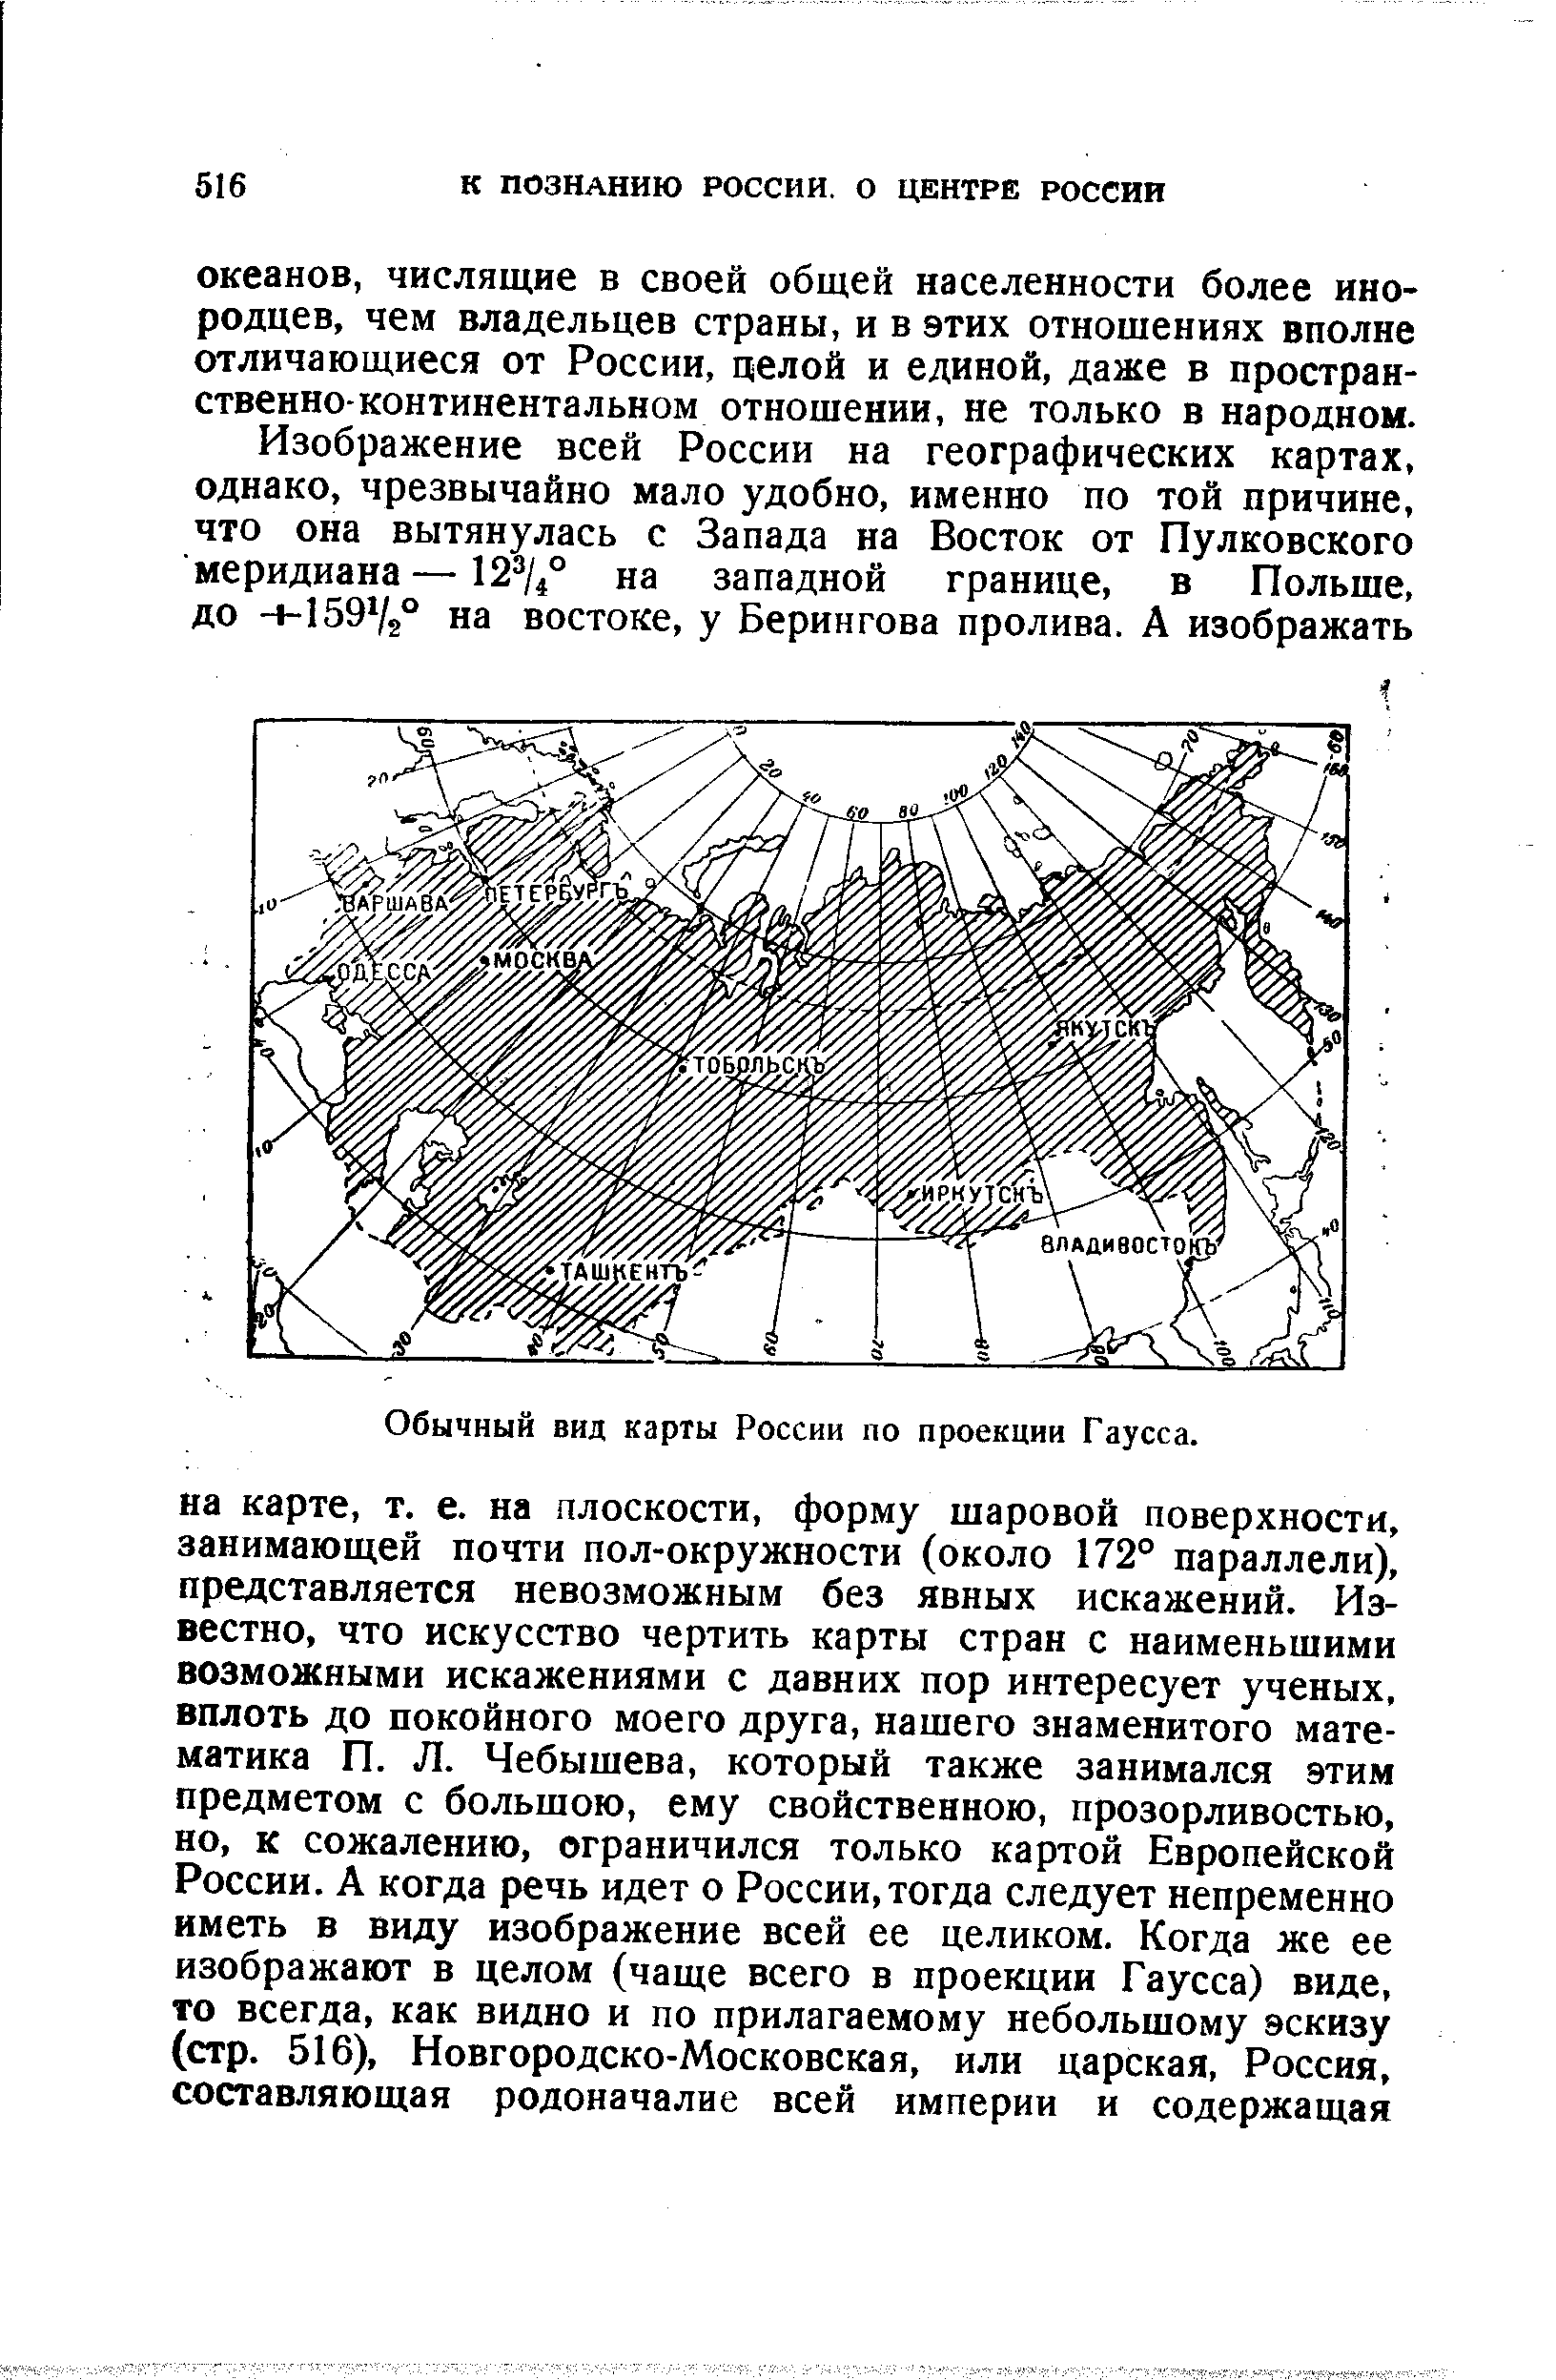 Обычный вид карты России по проекции Гаусса.